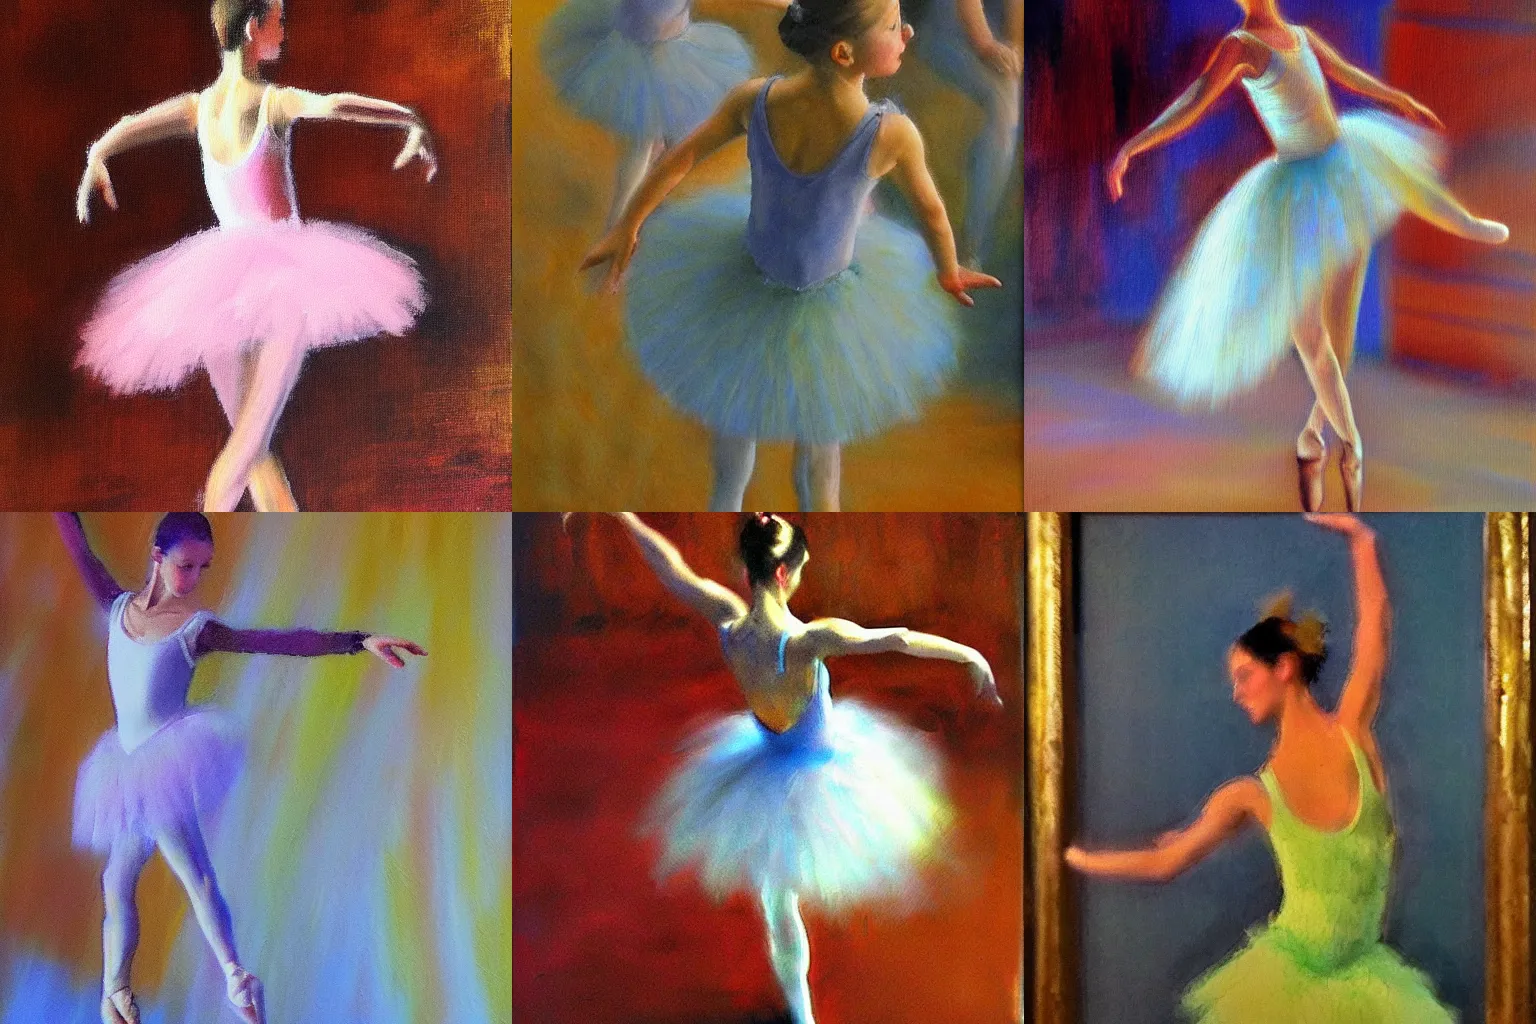 Prompt: ballet dancer impressionistic